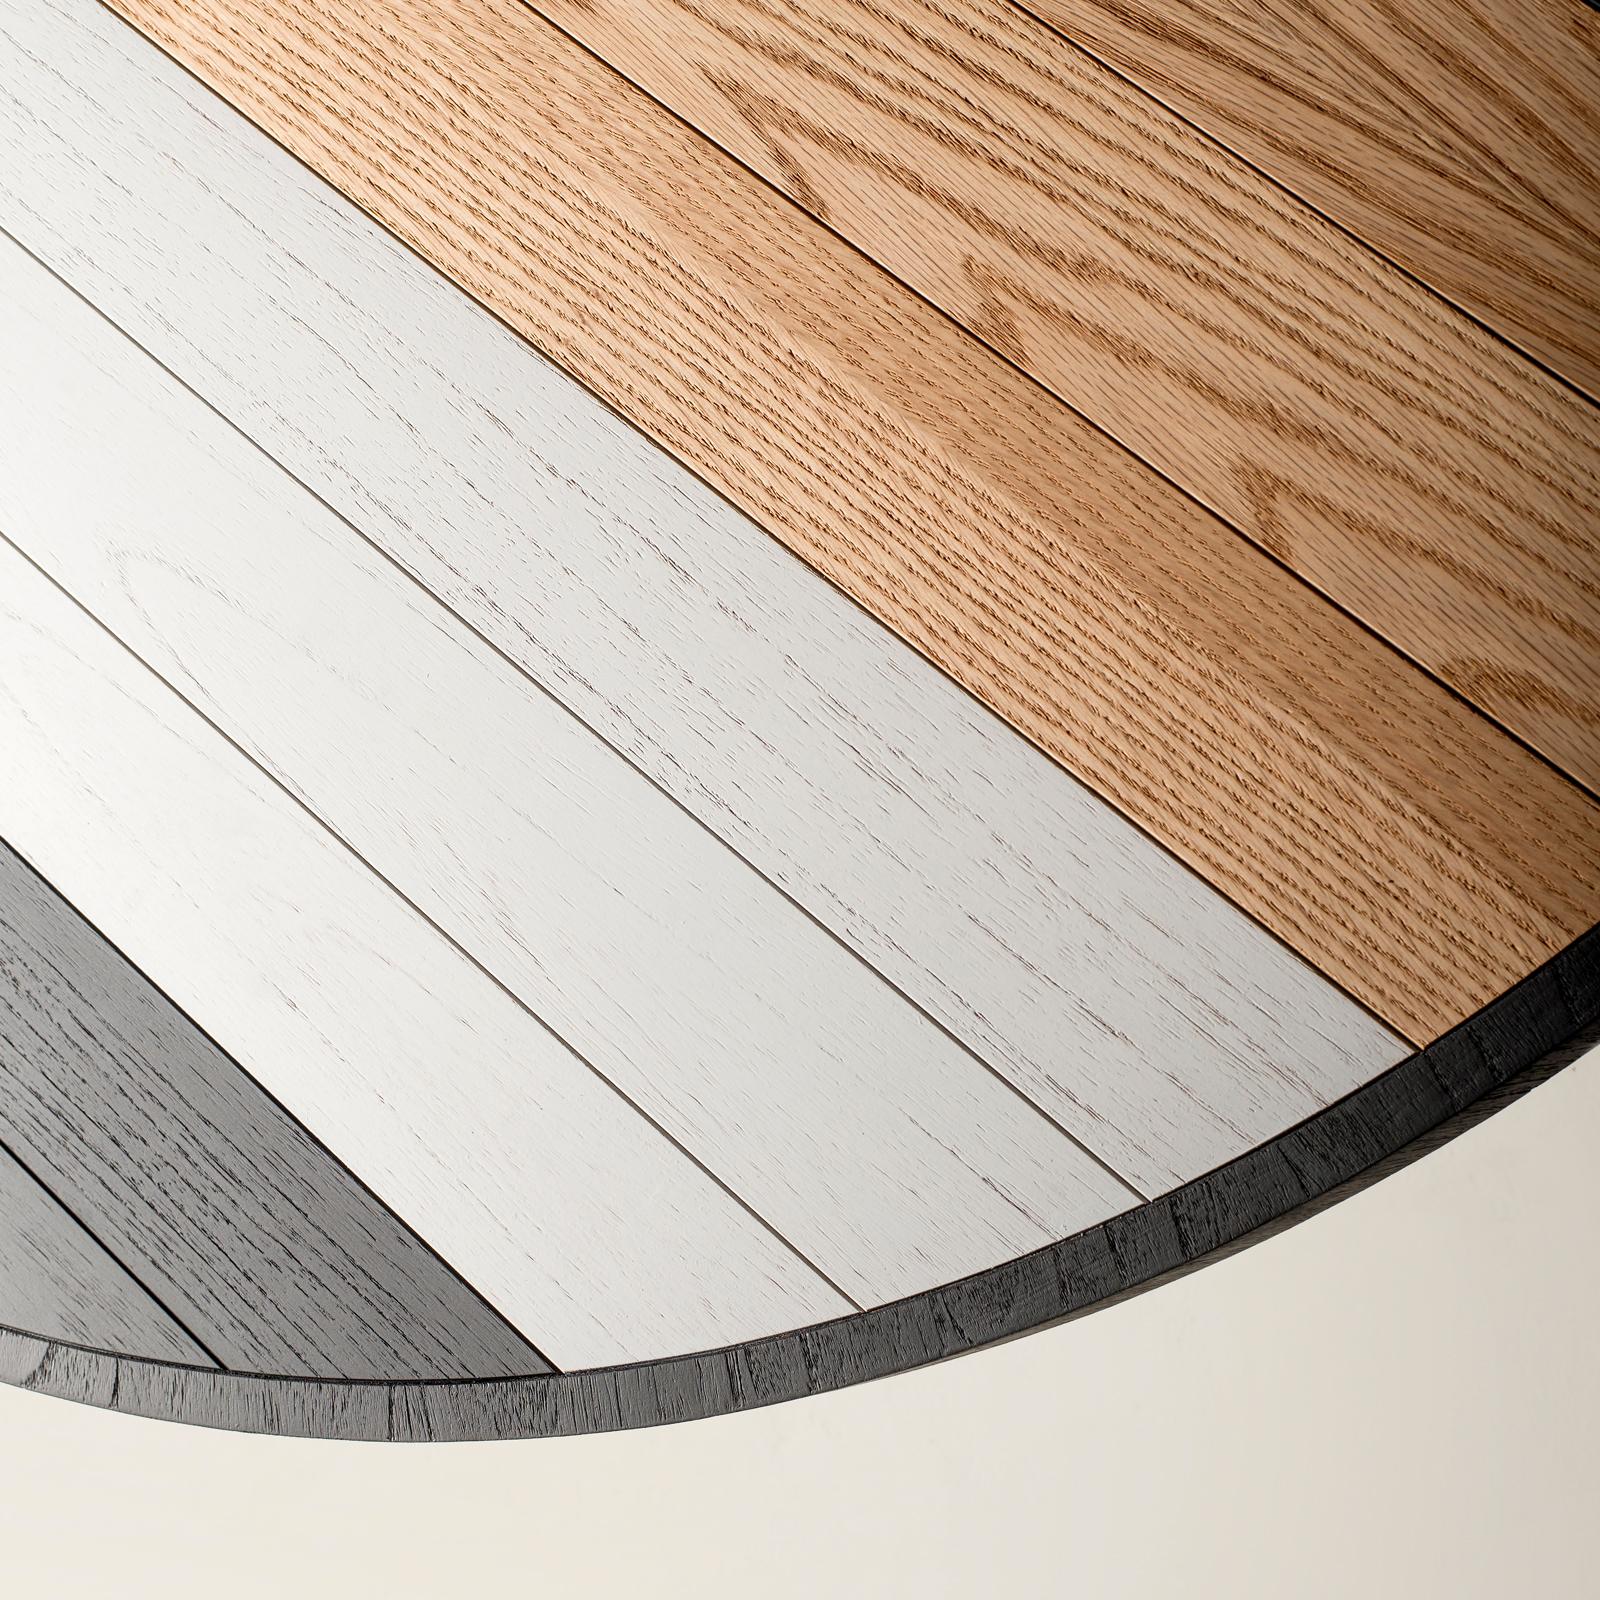 Die einzigartige Tischplatte des sechssitzigen Soto Round Dining Table aus Eichenholz ist der höchste Ausdruck von Larissas moderner Auffassung und Inspiration für Intarsienarbeiten der alten Schule, die durch die Fähigkeit des Handwerkers, jeden